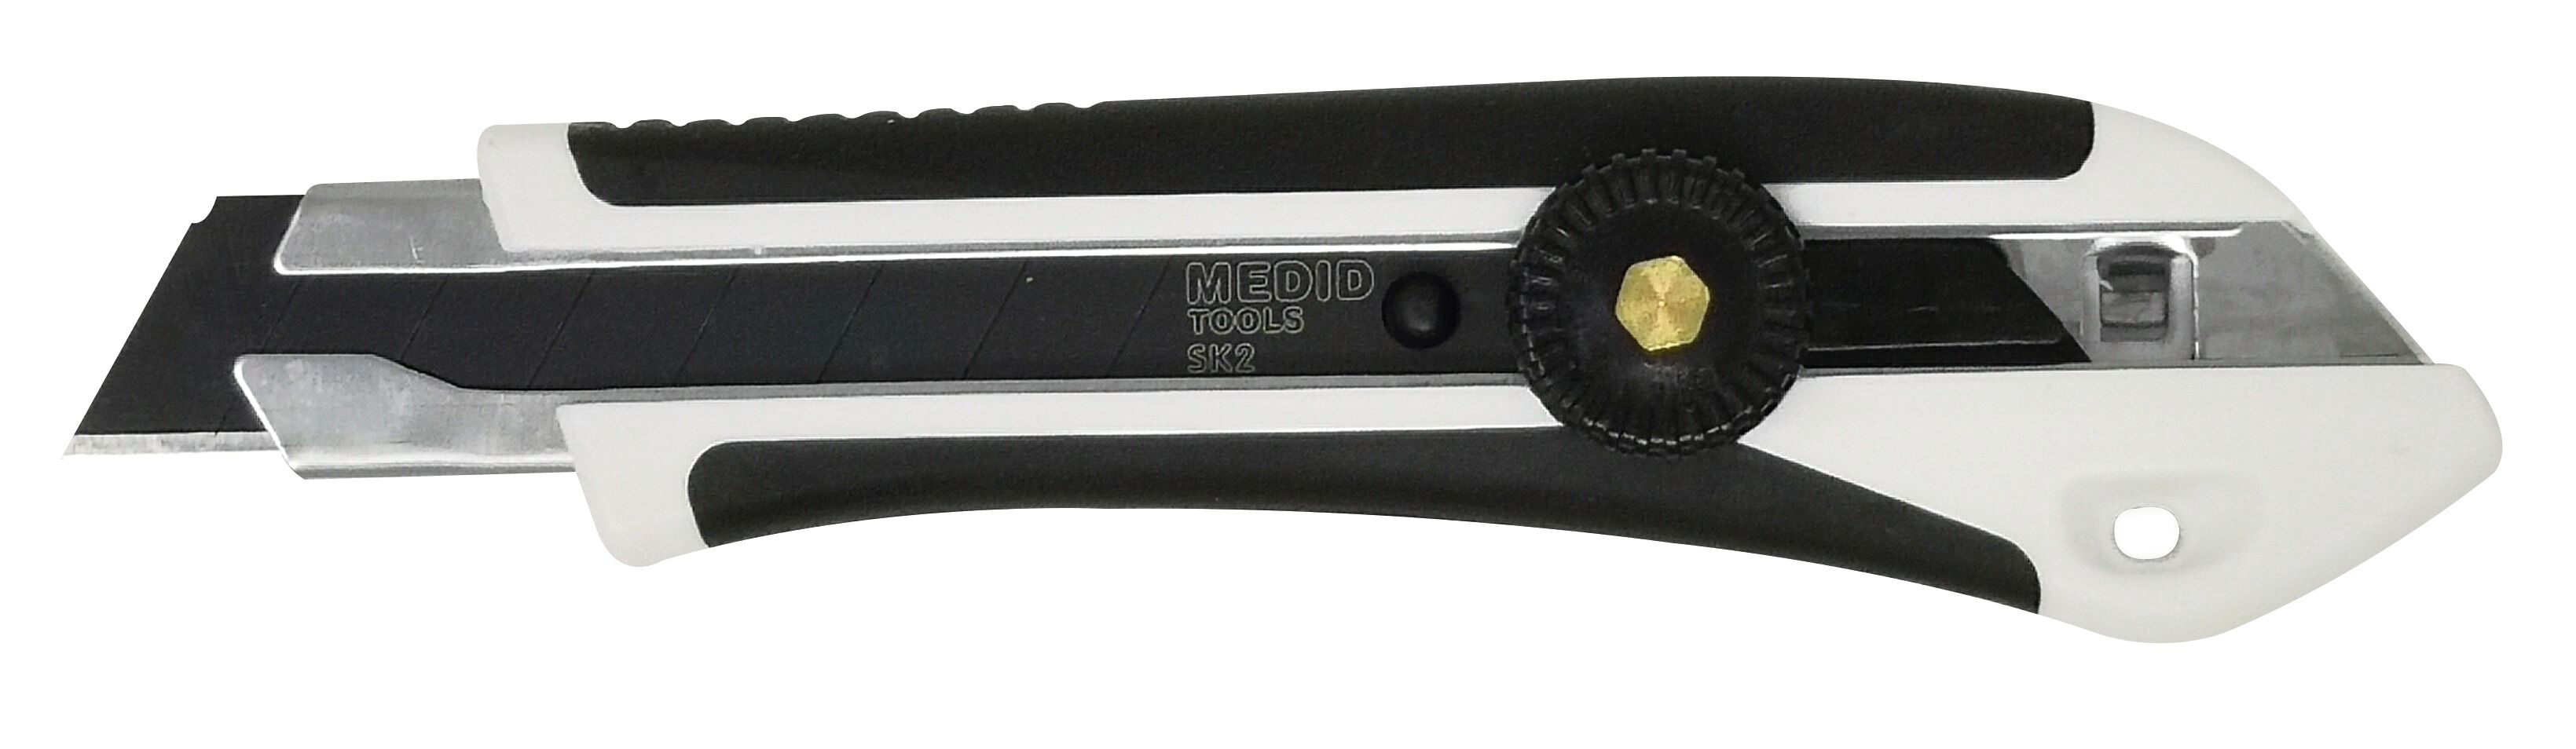 Cutter lame à molette - lame noire de 18mm à prix mini - MEDID Réf